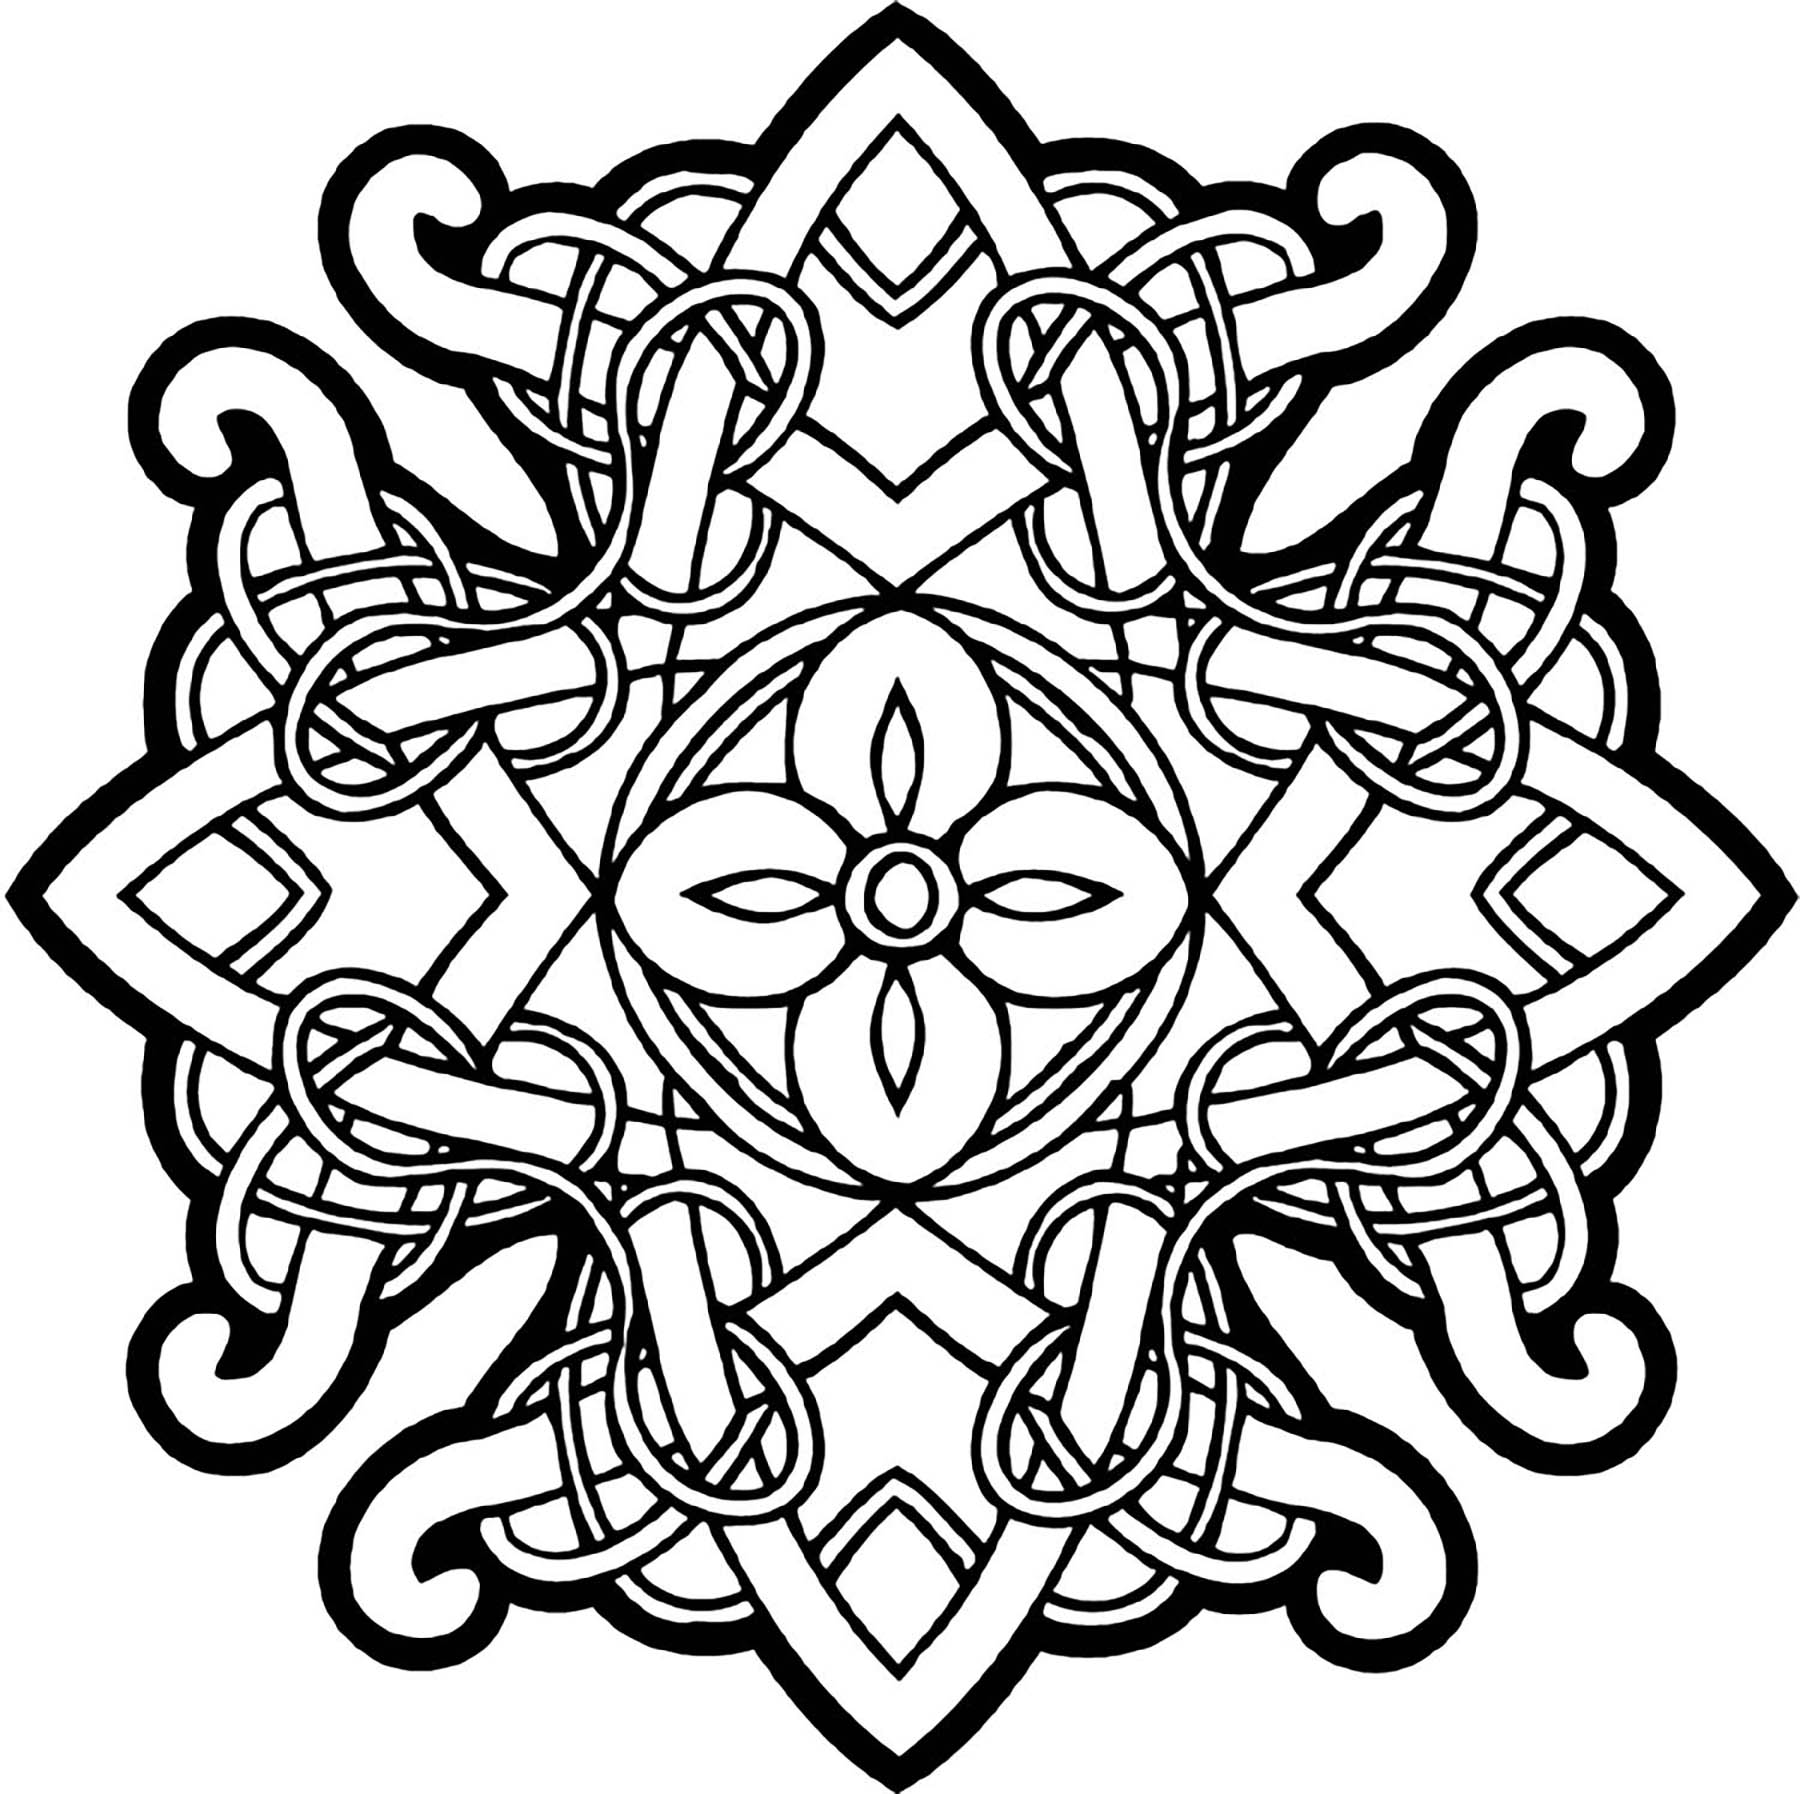 Ein hübsches keltisches Mandala. Verschlungene Linien, typisch für die keltische Kunst, dicke Striche und perfekte Symmetrie. Hier ist ein Mandala zum Ausmalen, das dich auf eine Reise in die wunderschönen Ebenen Irlands mitnimmt ...